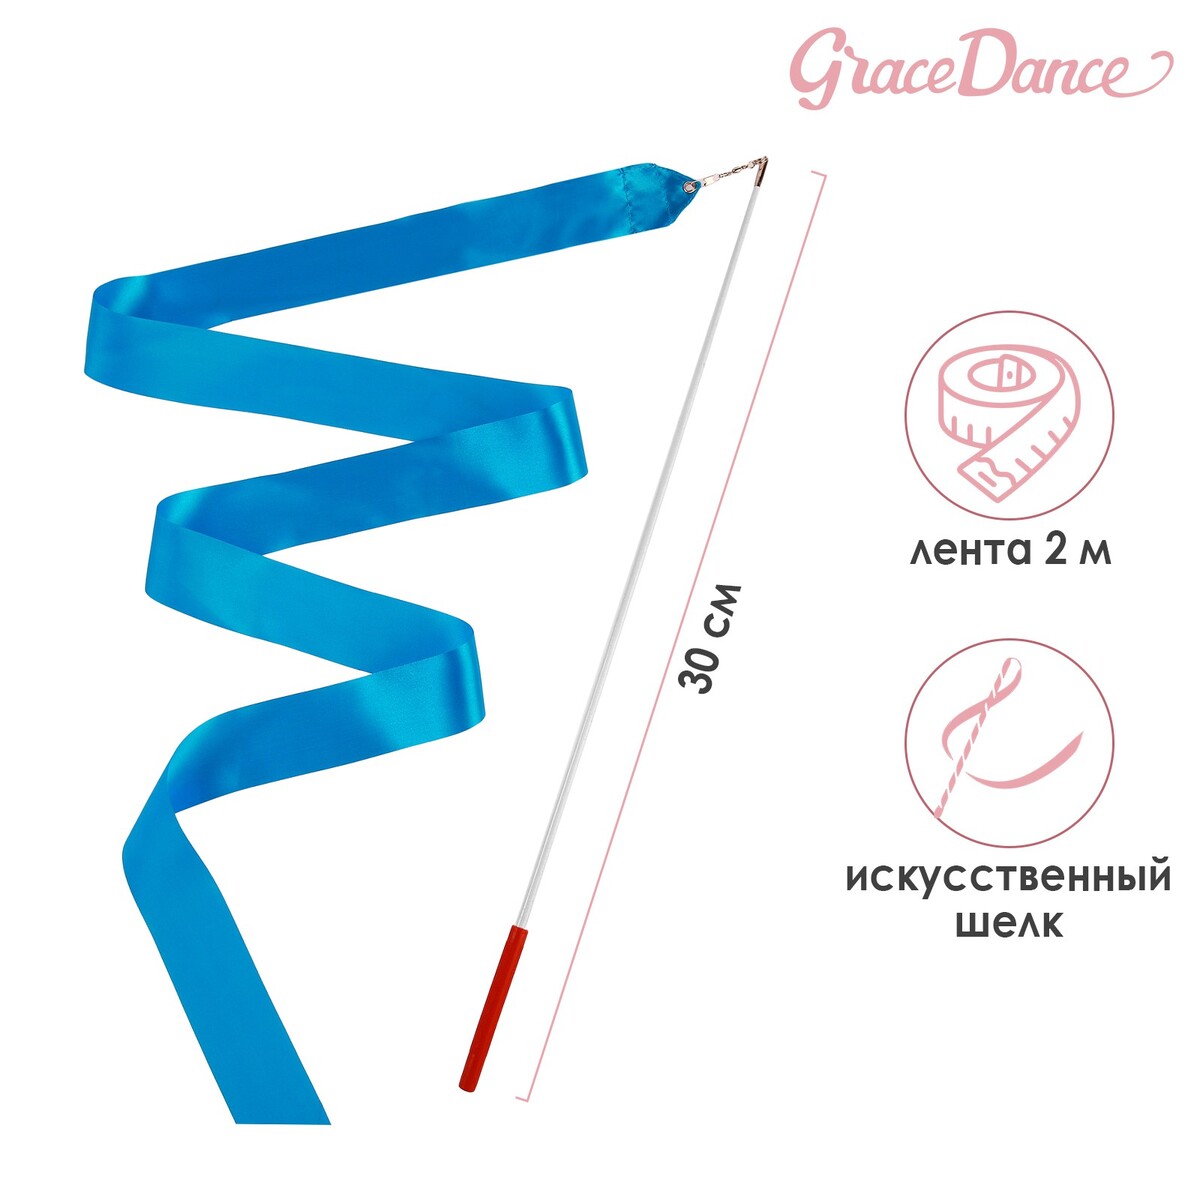 Лента для художественной гимнастики с палочкой grace dance, 2 м, цвет голубой лента гимнастическая с палочкой grace dance 2 м голубой